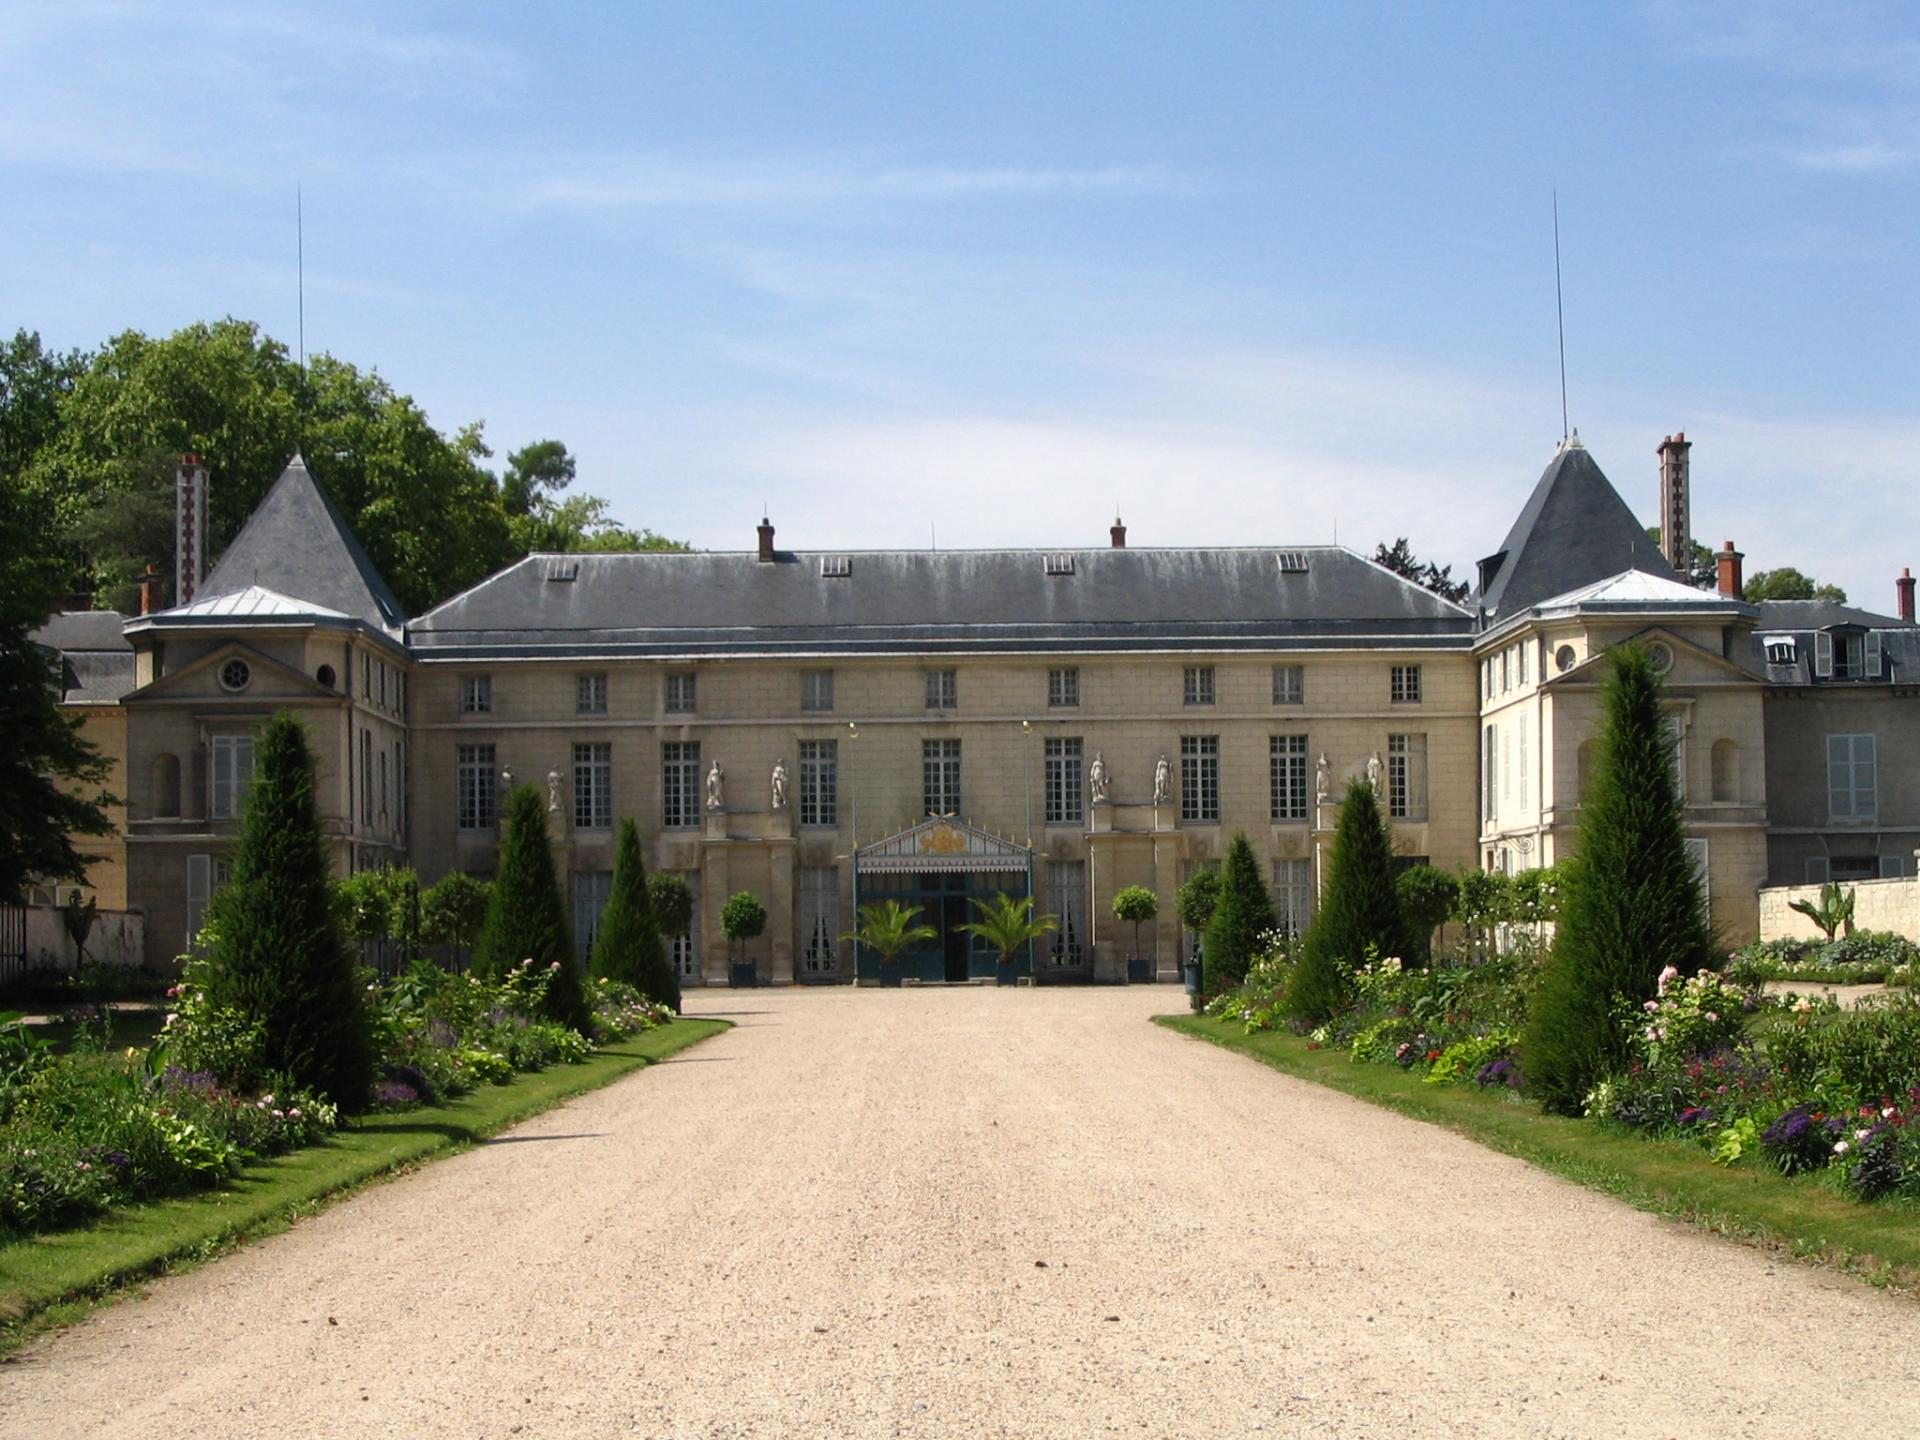 Musée national des châteaux de Malmaison et de Bois - Préau